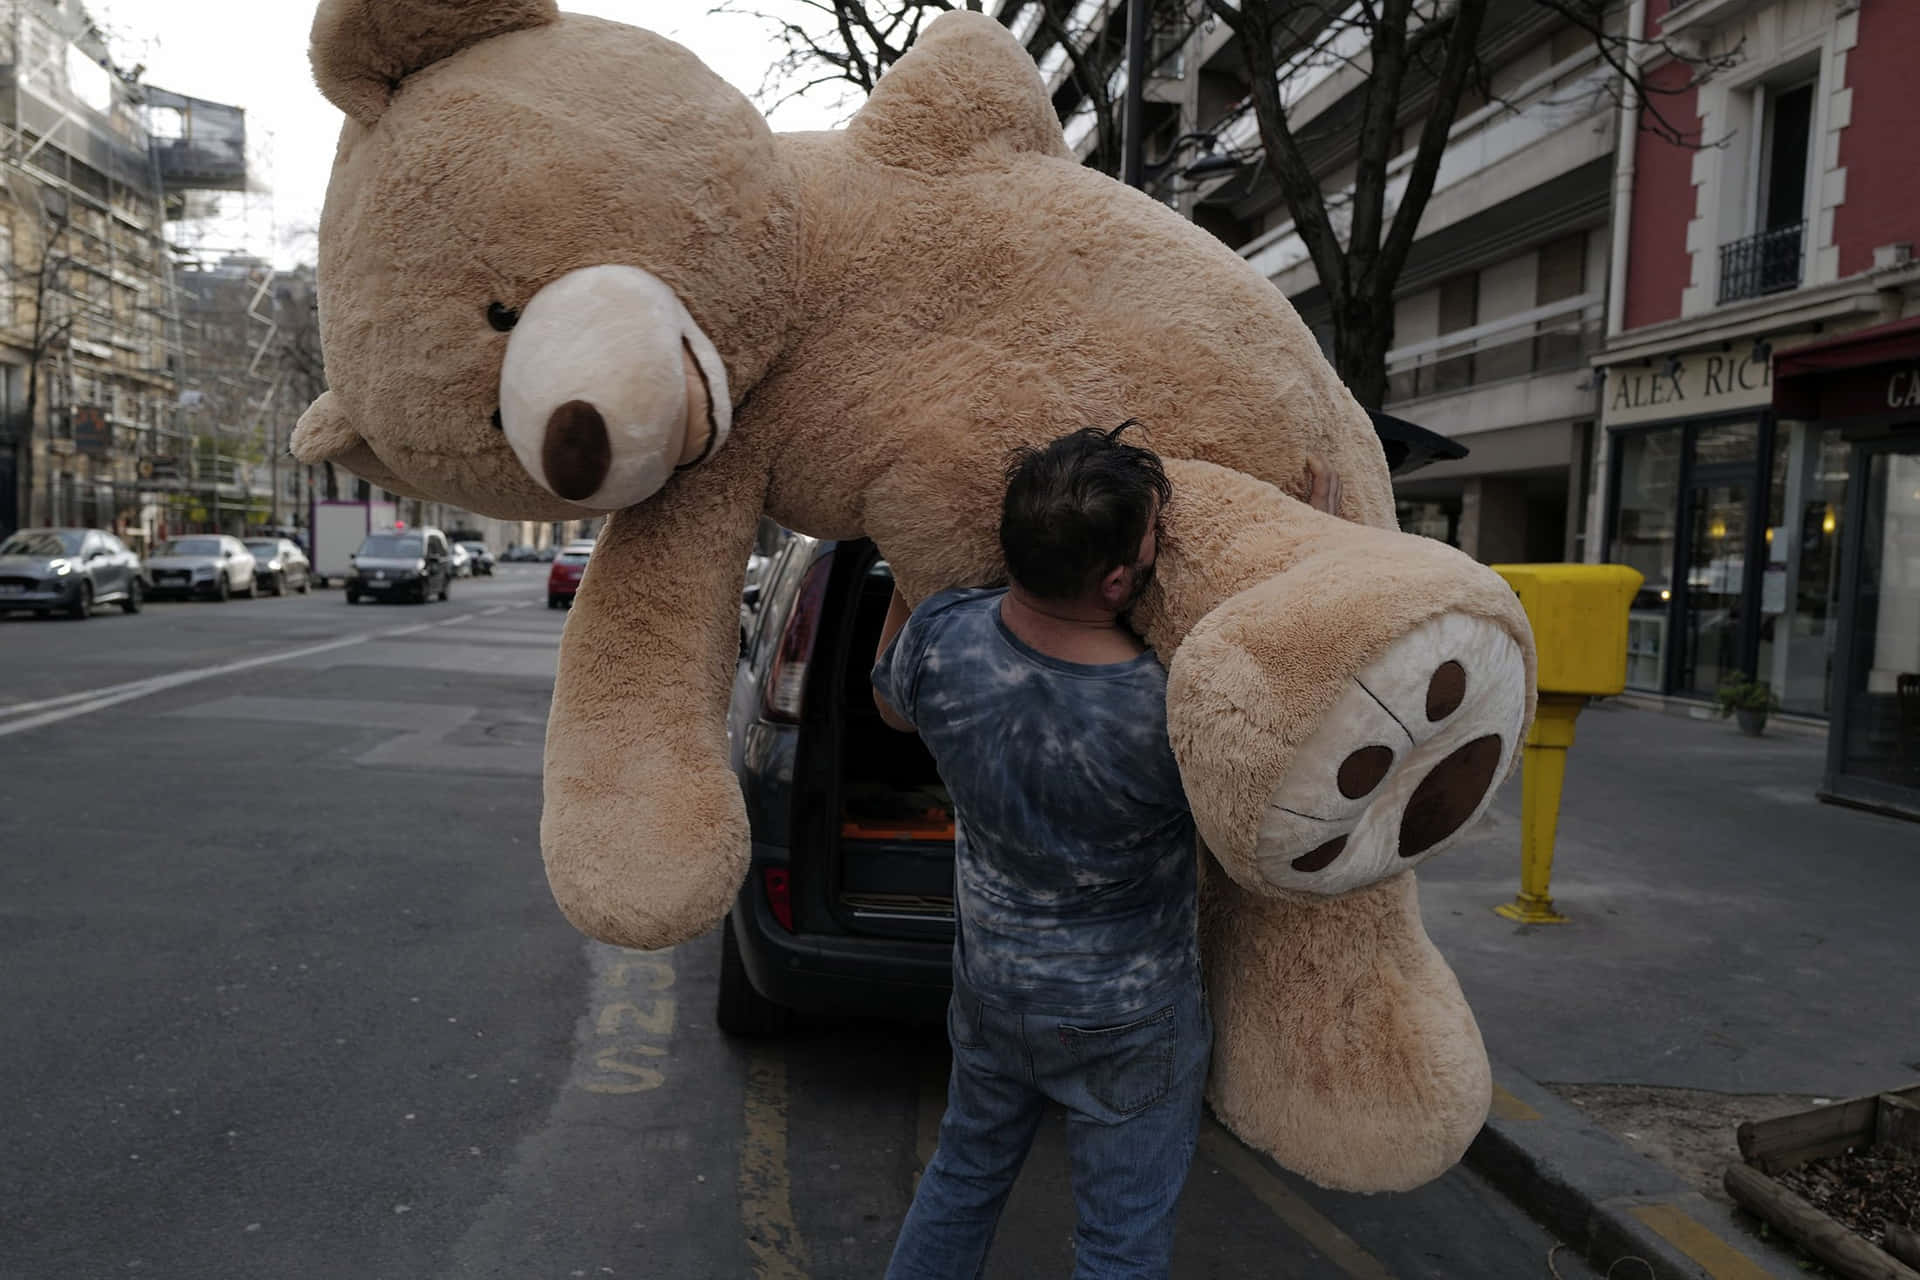 "A Smiling Teddy Bear with a Hug"